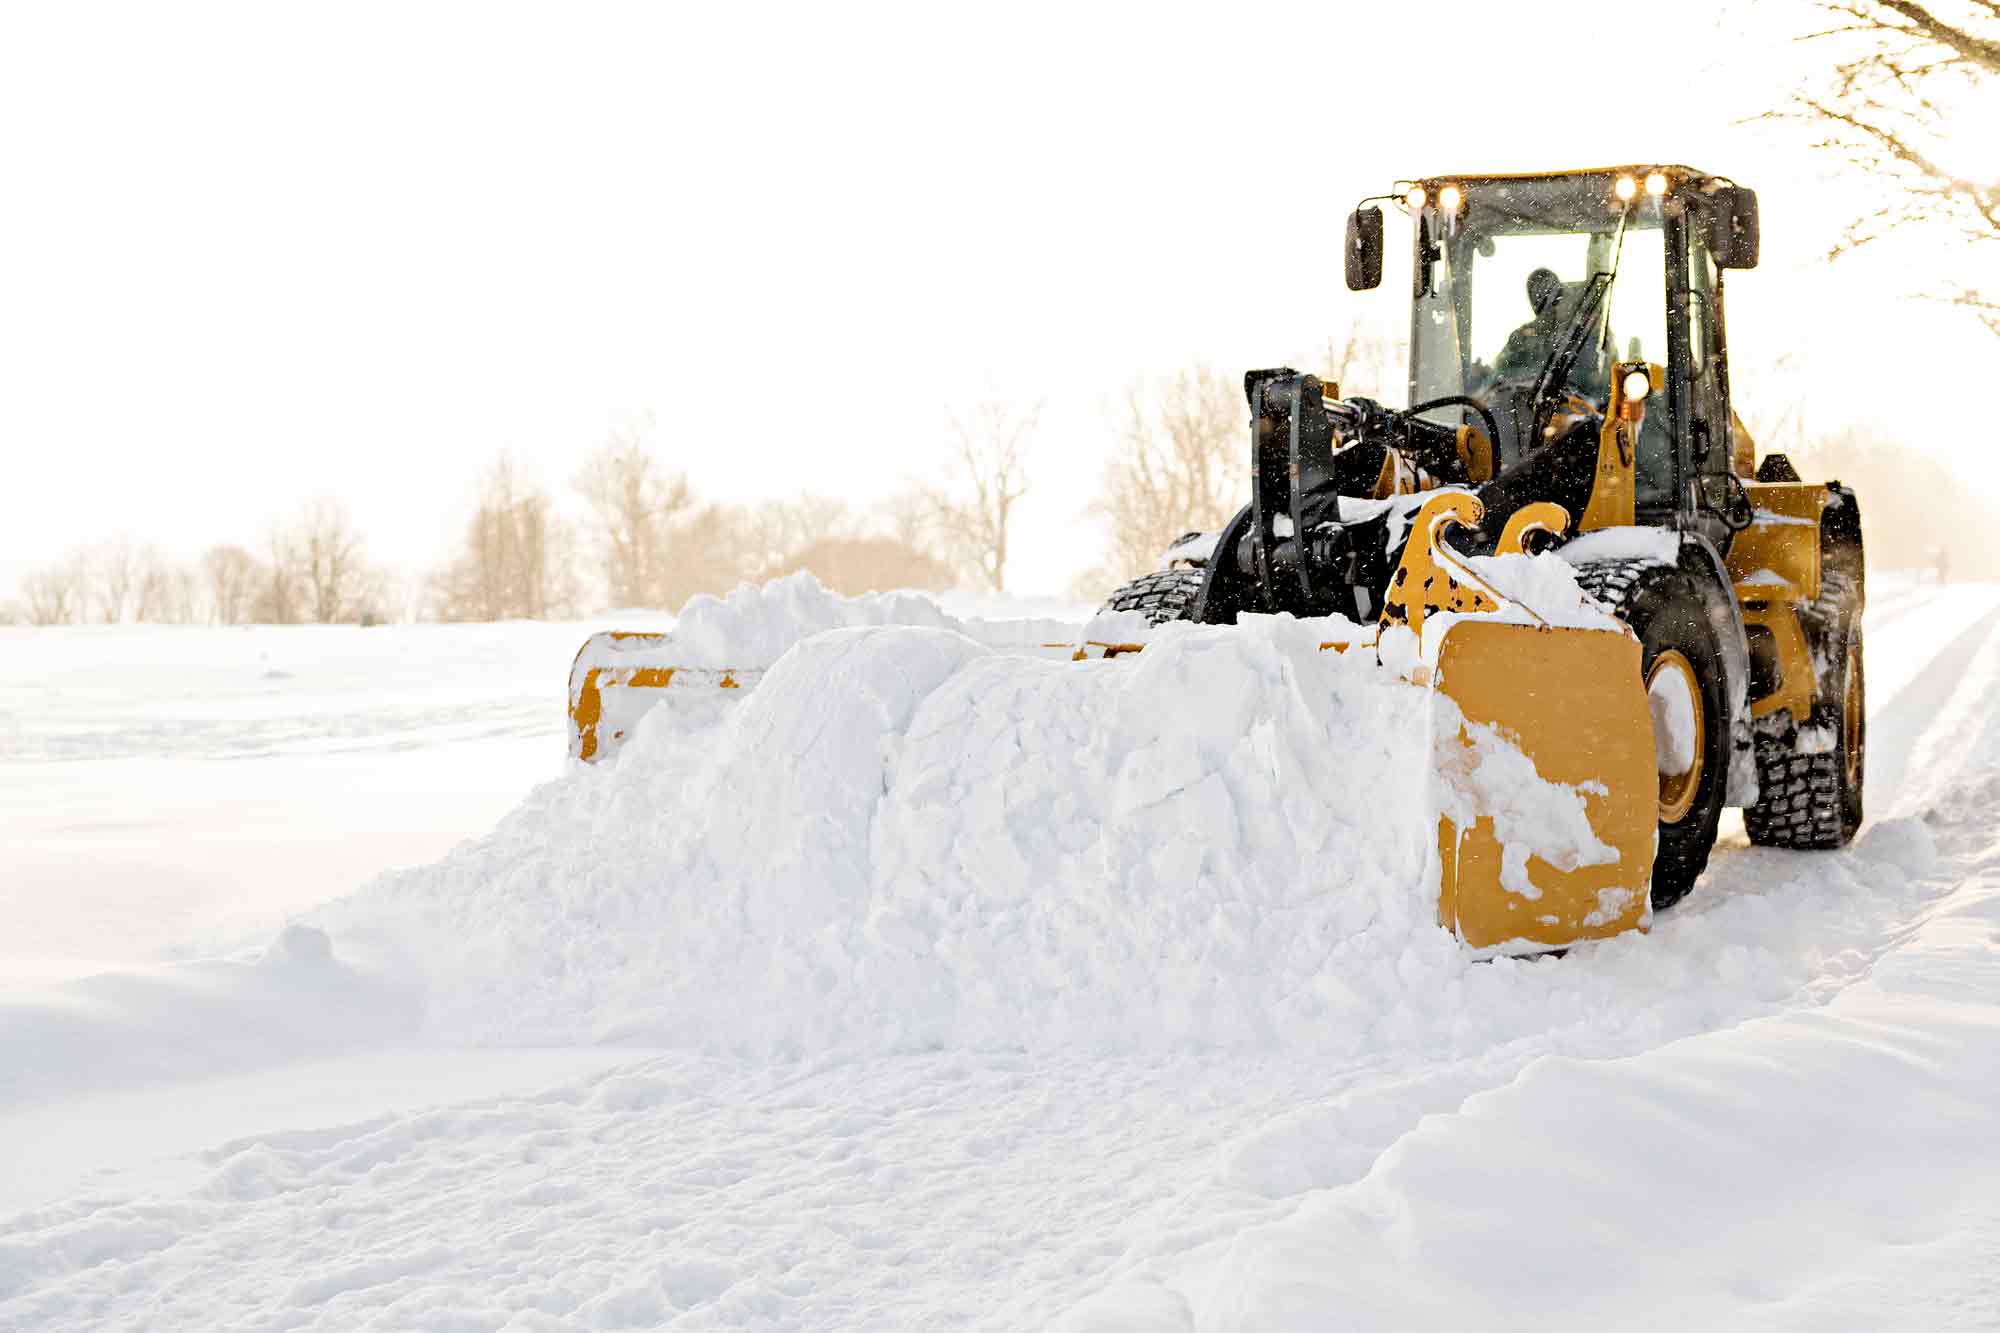 Snöskottning av traktor.